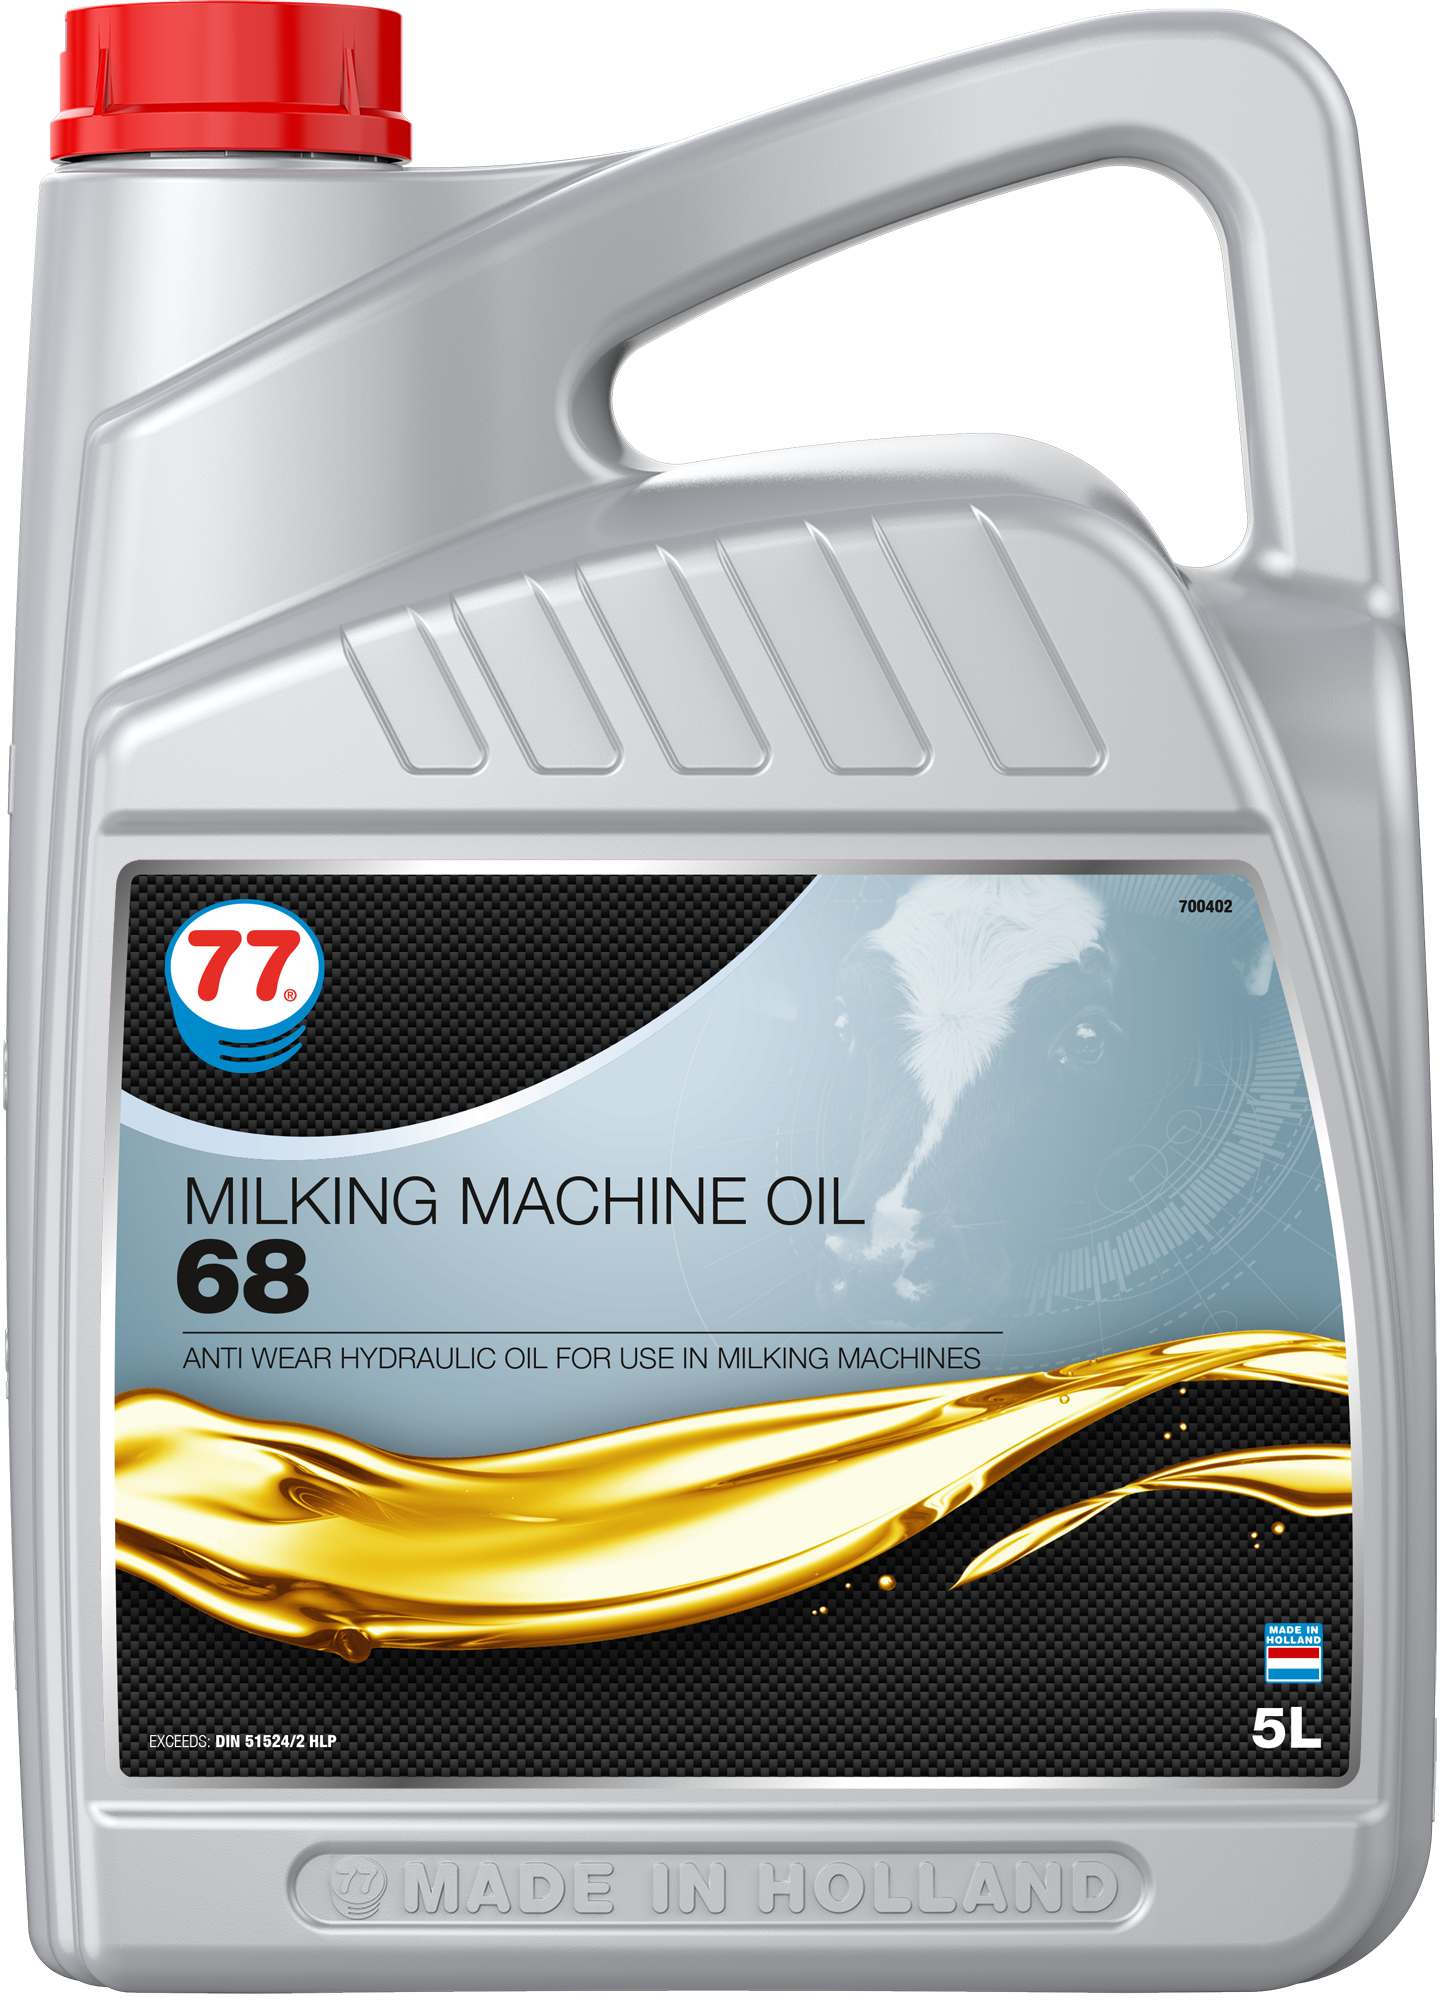 4340-5 Milking Machine Oil 68 is een hoogwaardige olie ontwikkeld voor gebruik in melkmachines en samengesteld uit speciaal geselecteerde zeer geraffineerde minerale oliën.